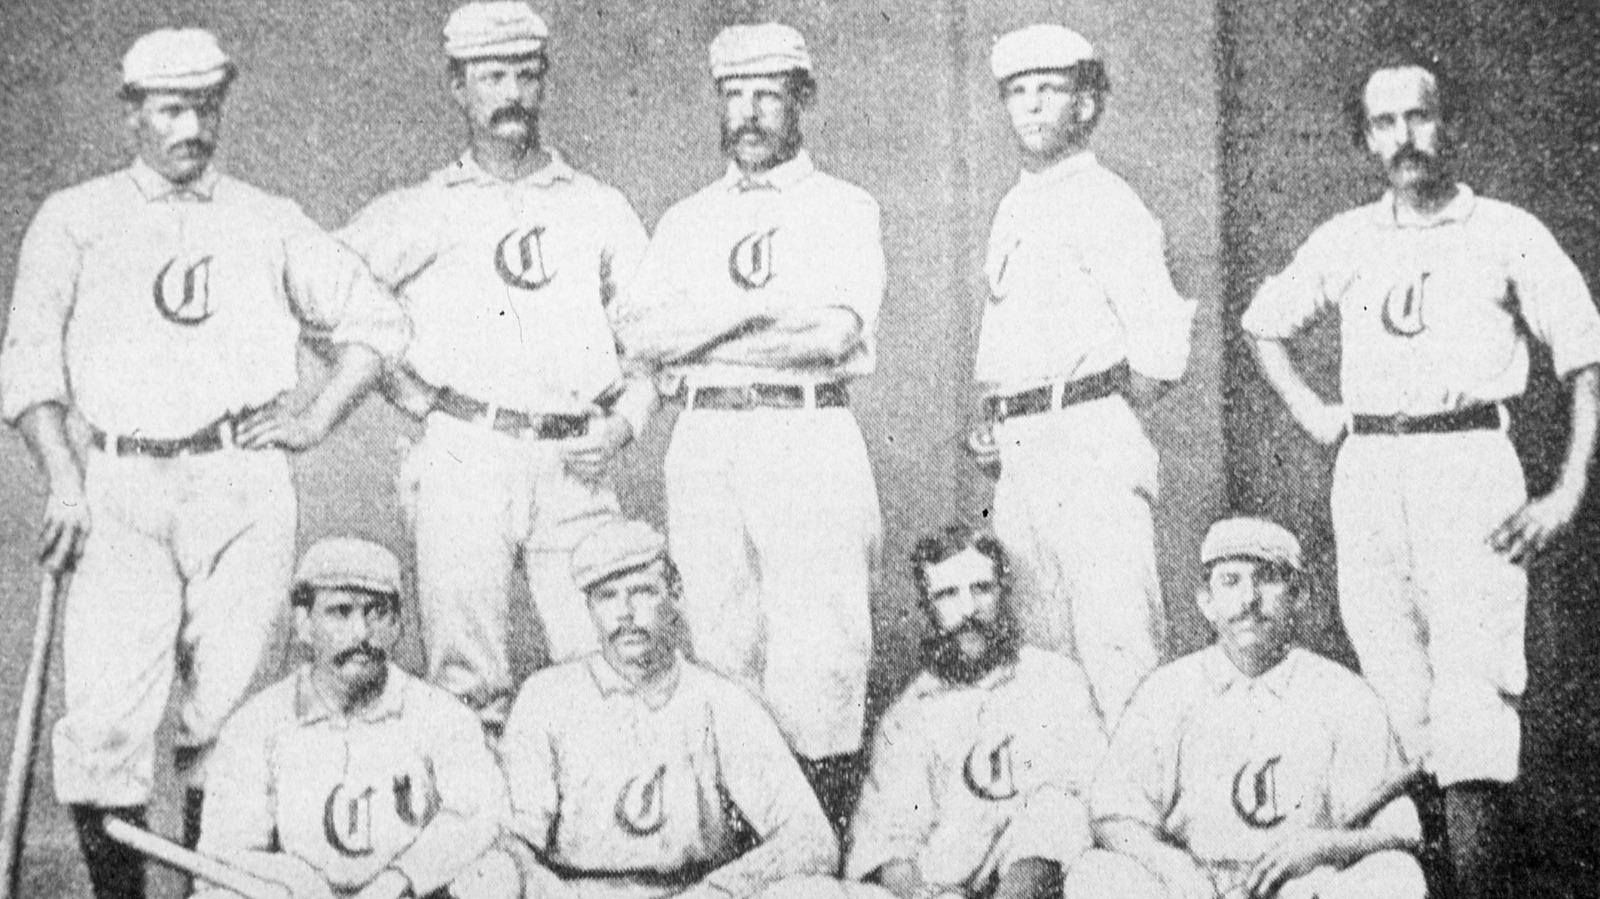 Who were the original 8 MLB (Major League Baseball) teams?